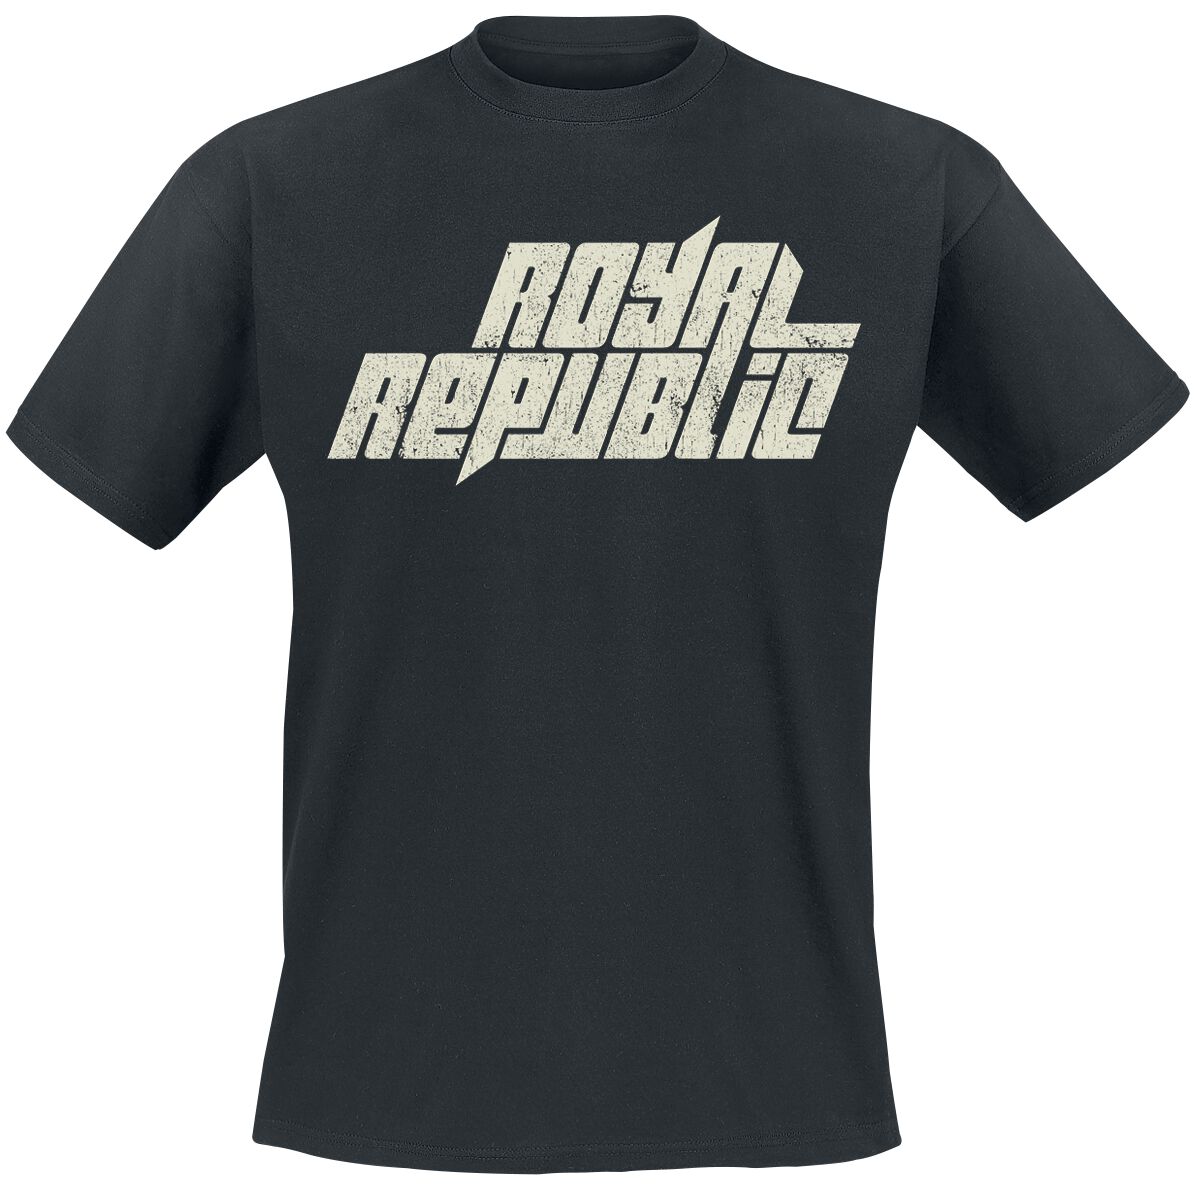 Royal Republic T-Shirt - Vintage Logo - S bis 5XL - für Männer - Größe M - schwarz  - Lizenziertes Merchandise!